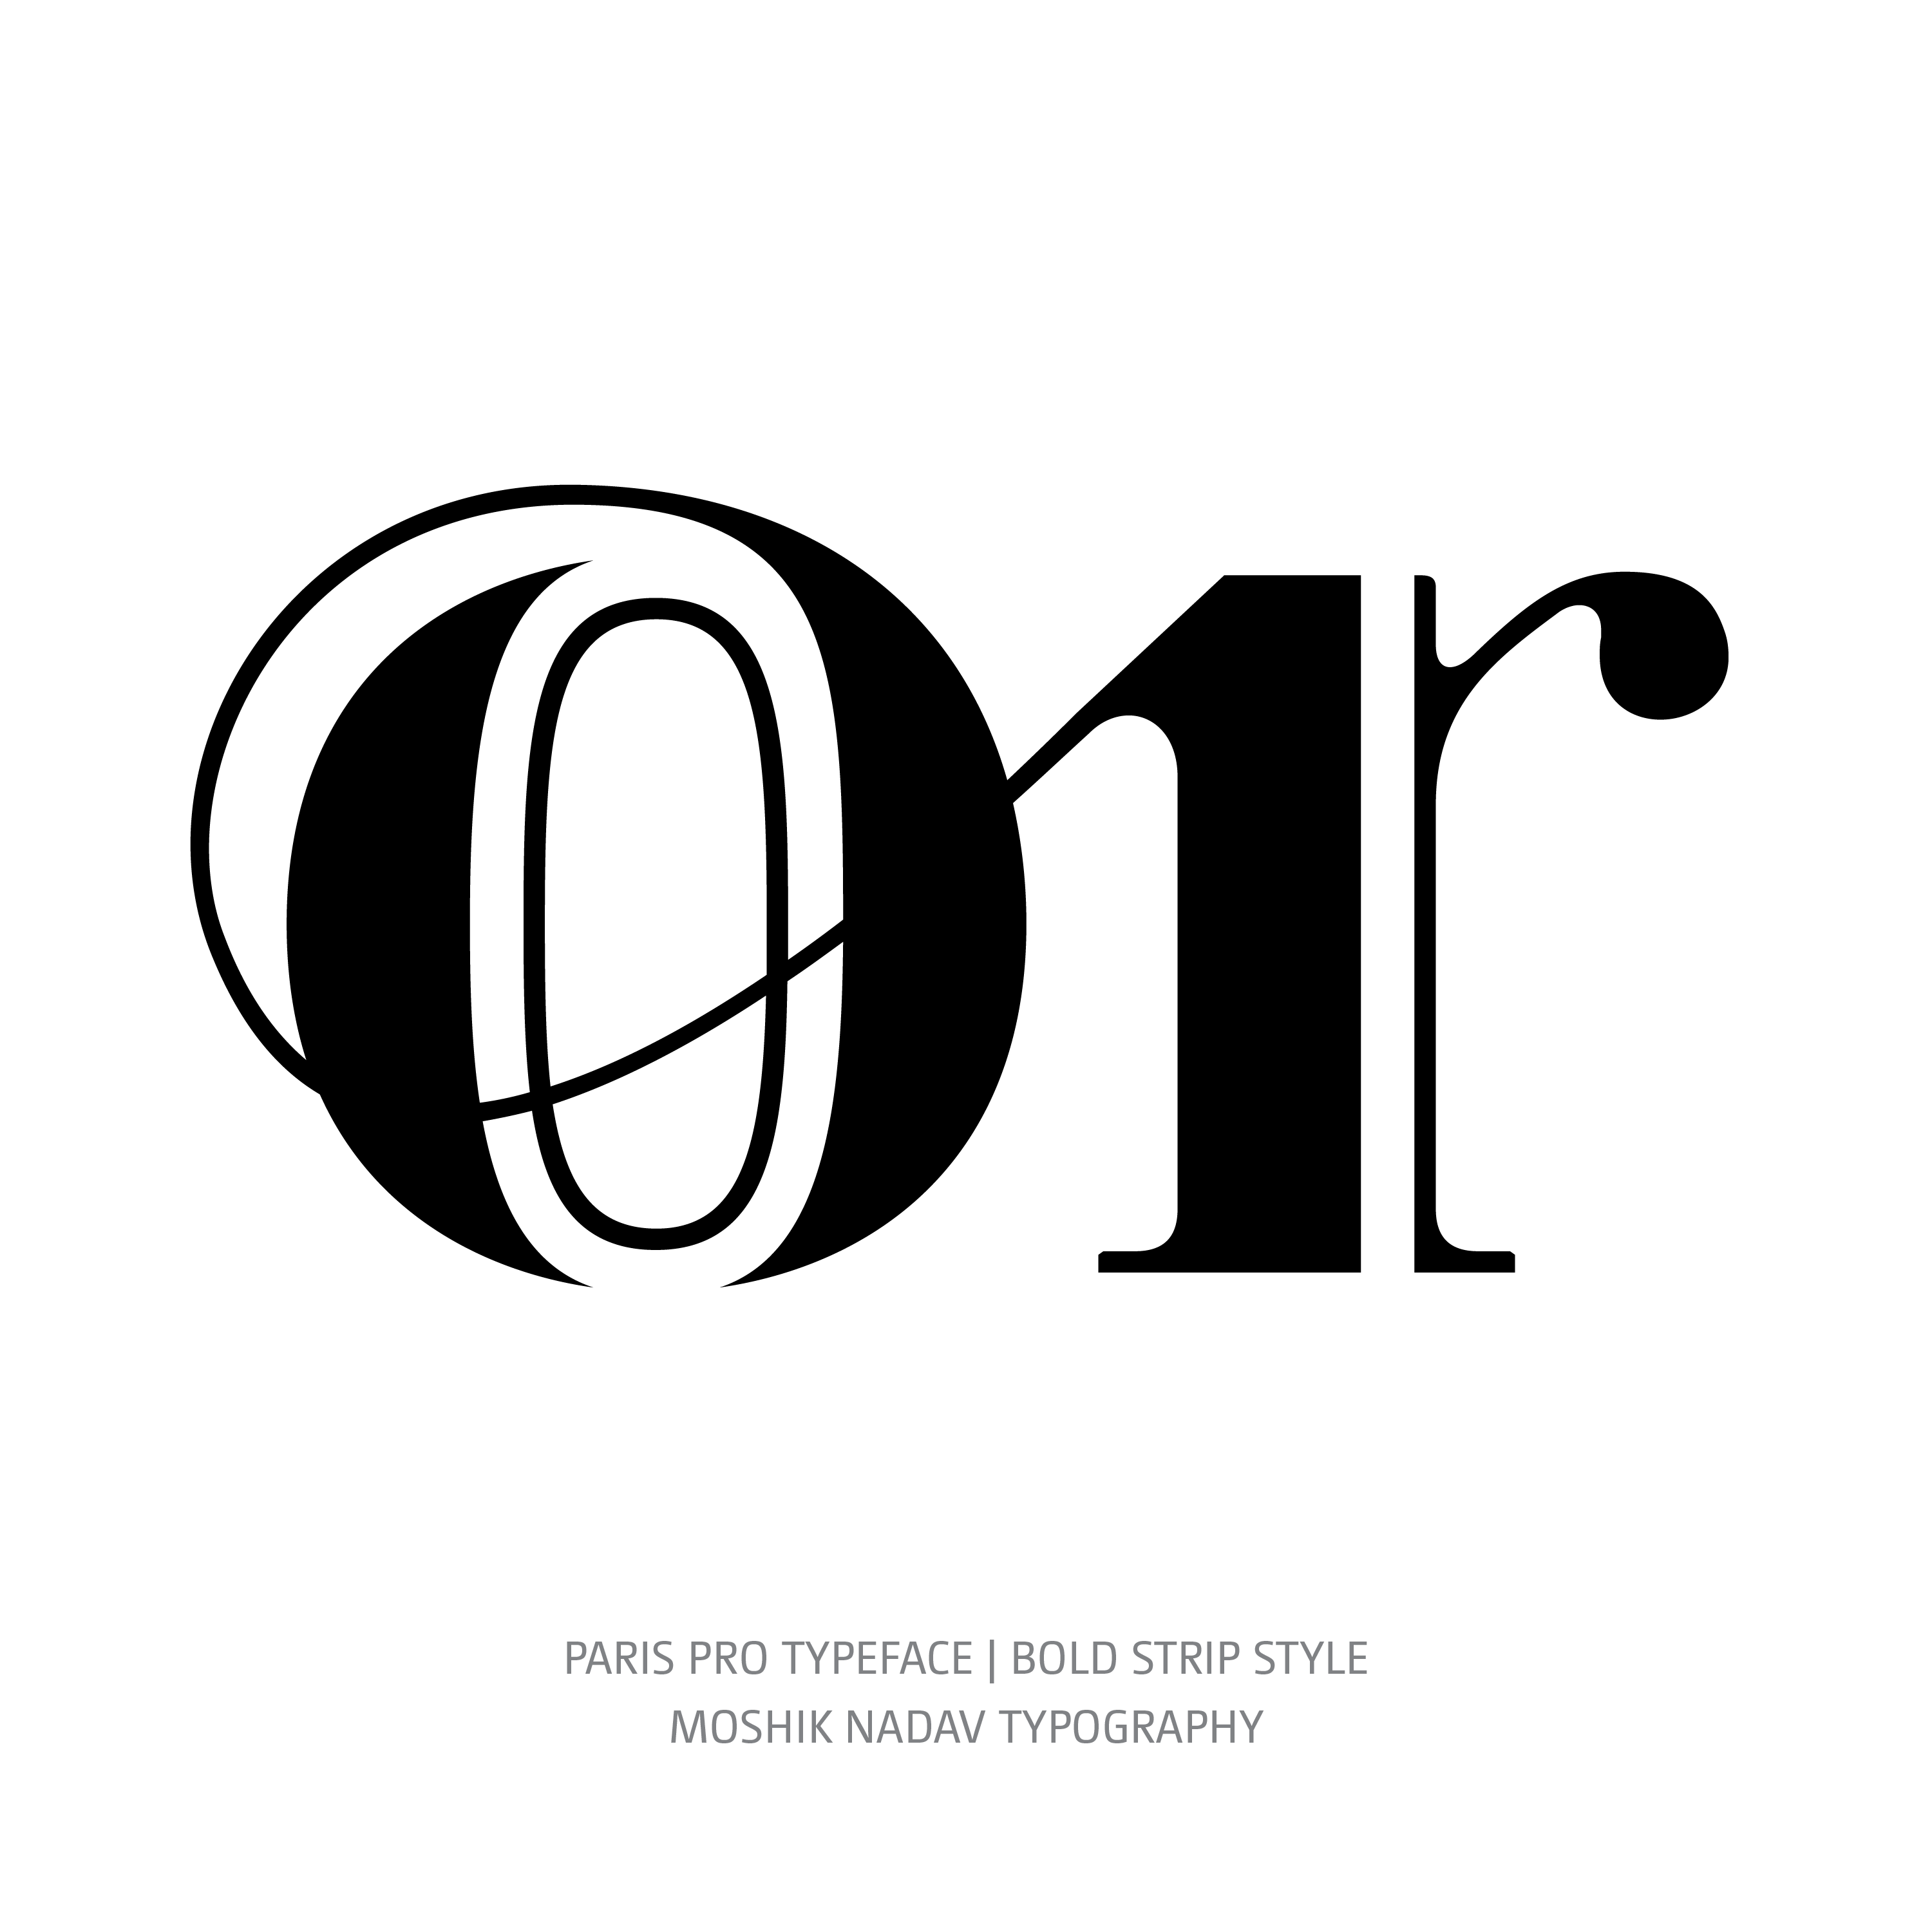 Paris Pro Typeface Bold Strip or alt ligature